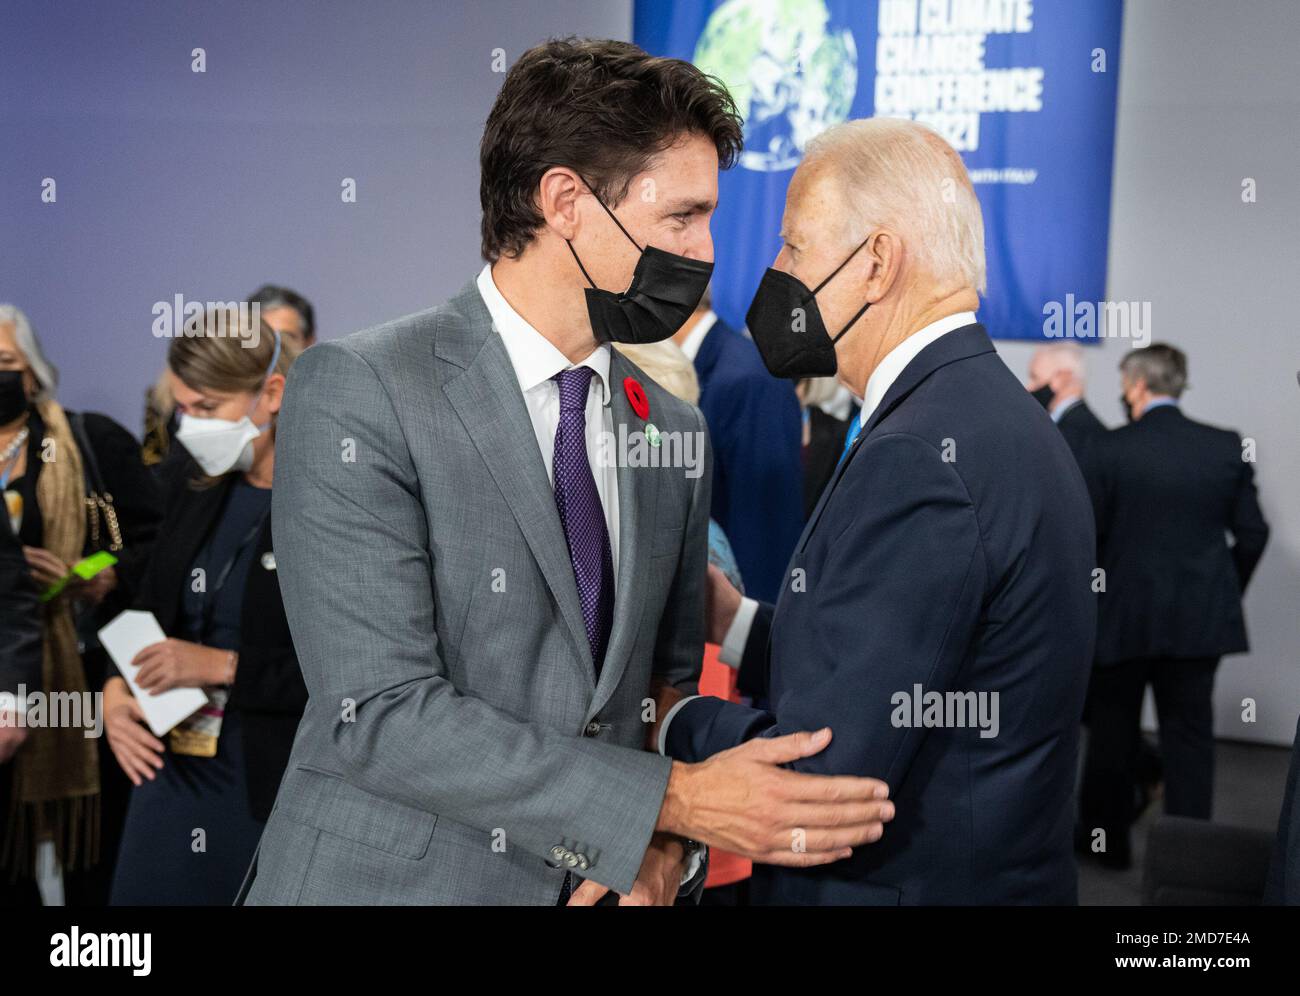 Reportage: Präsident Joe Biden begrüßt den kanadischen Premierminister Justin Trudeau auf der Initiative Build Back Better World, Dienstag, 2. November 2021, während der UN COP26 Klimakonferenz im schottischen Event Campus Stockfoto